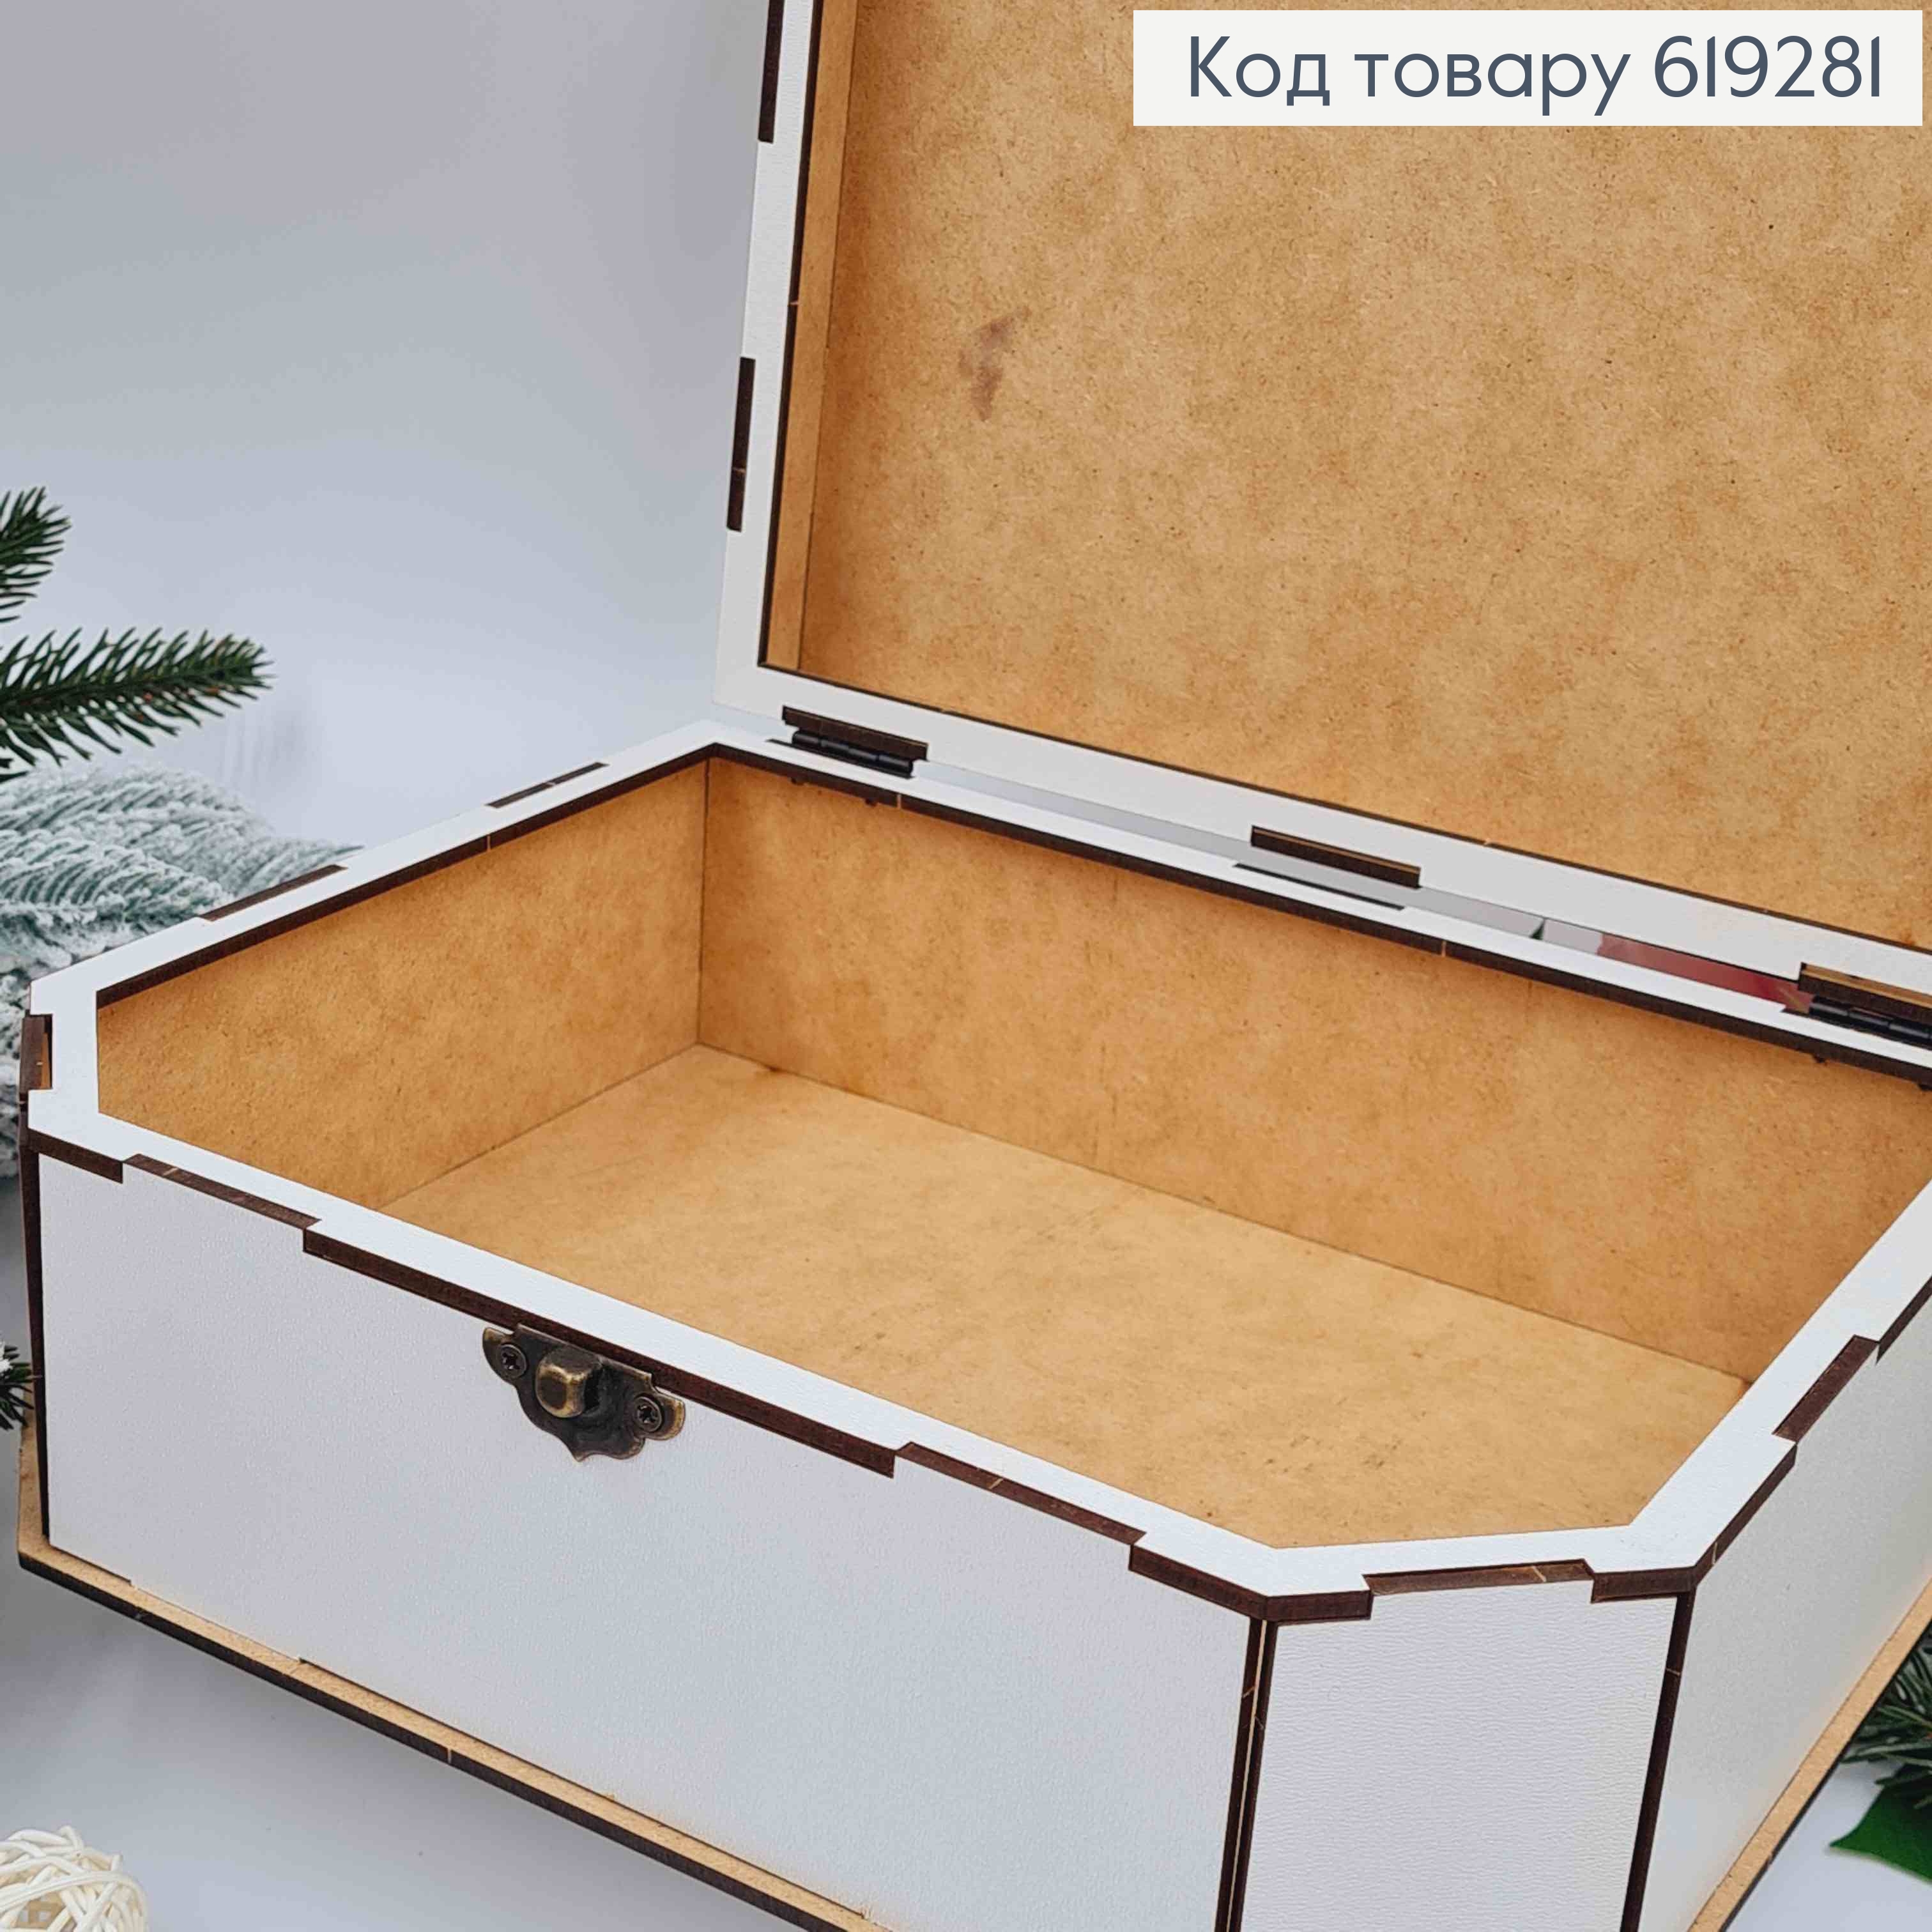 Дерев'яна подарункова коробка, Біла, 24*19*6см, на застібці. Україна 619281 фото 3